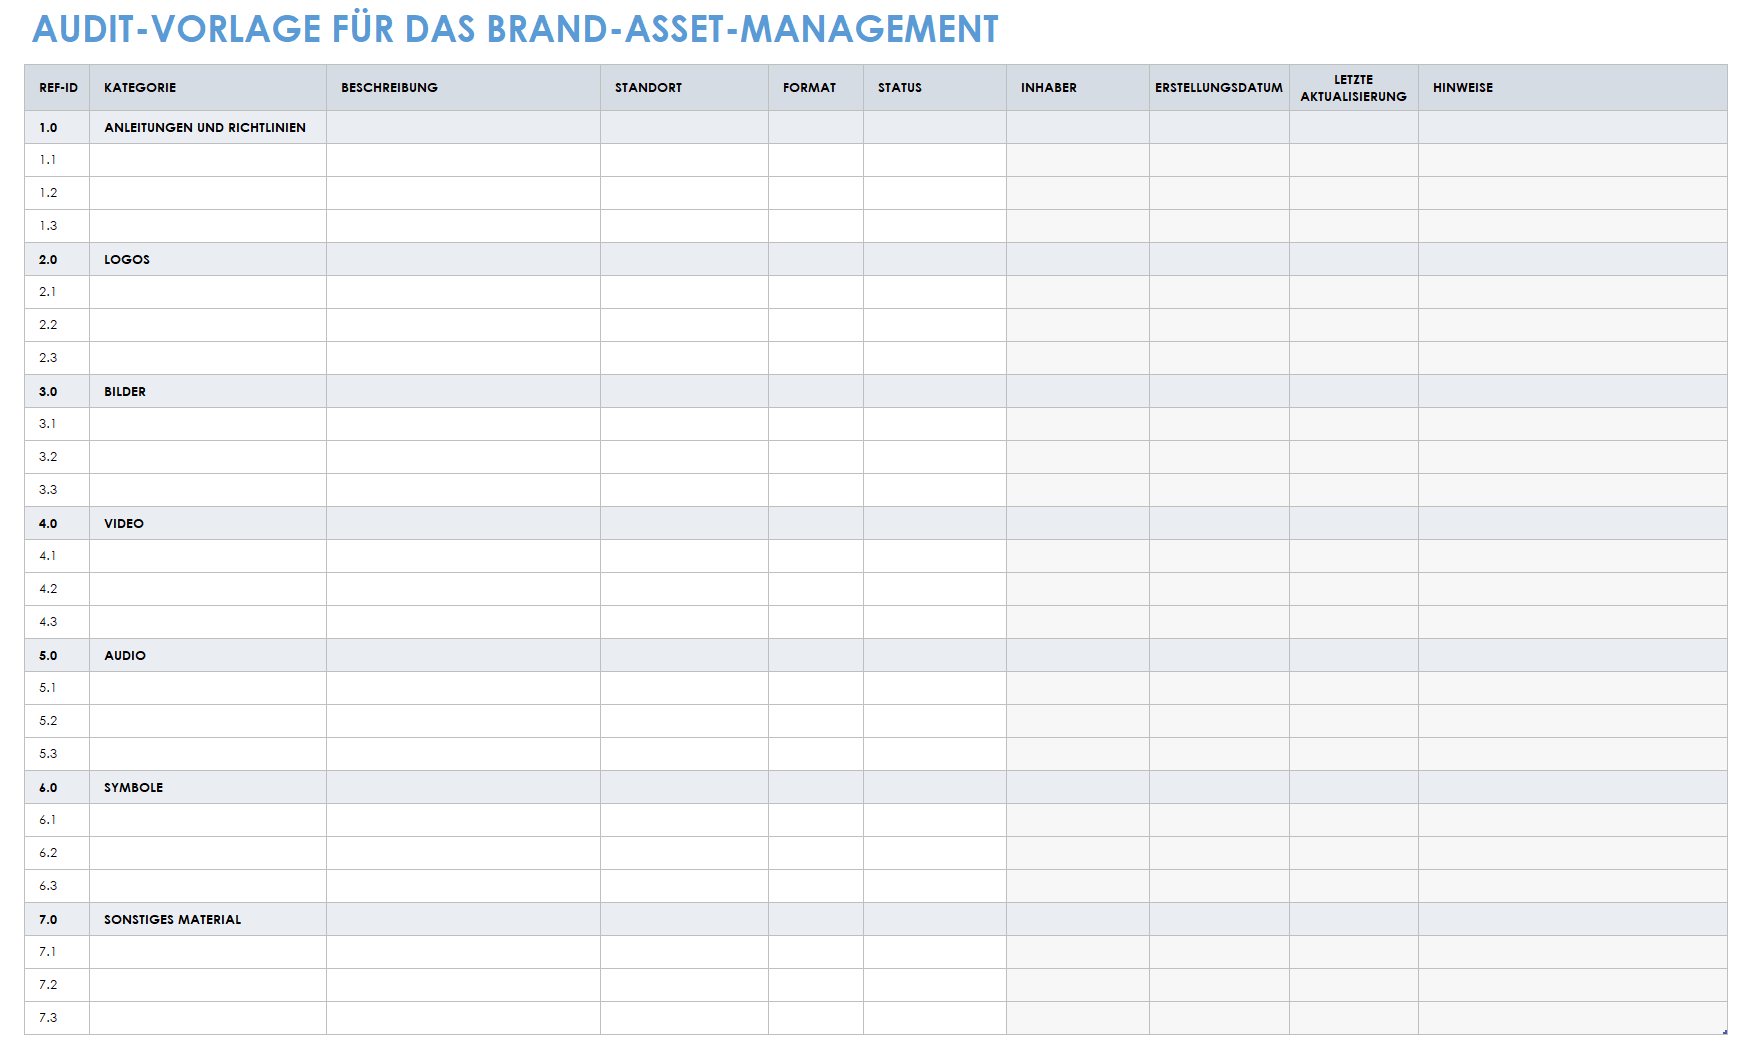  Audit-Vorlage für das Marken-Asset-Management